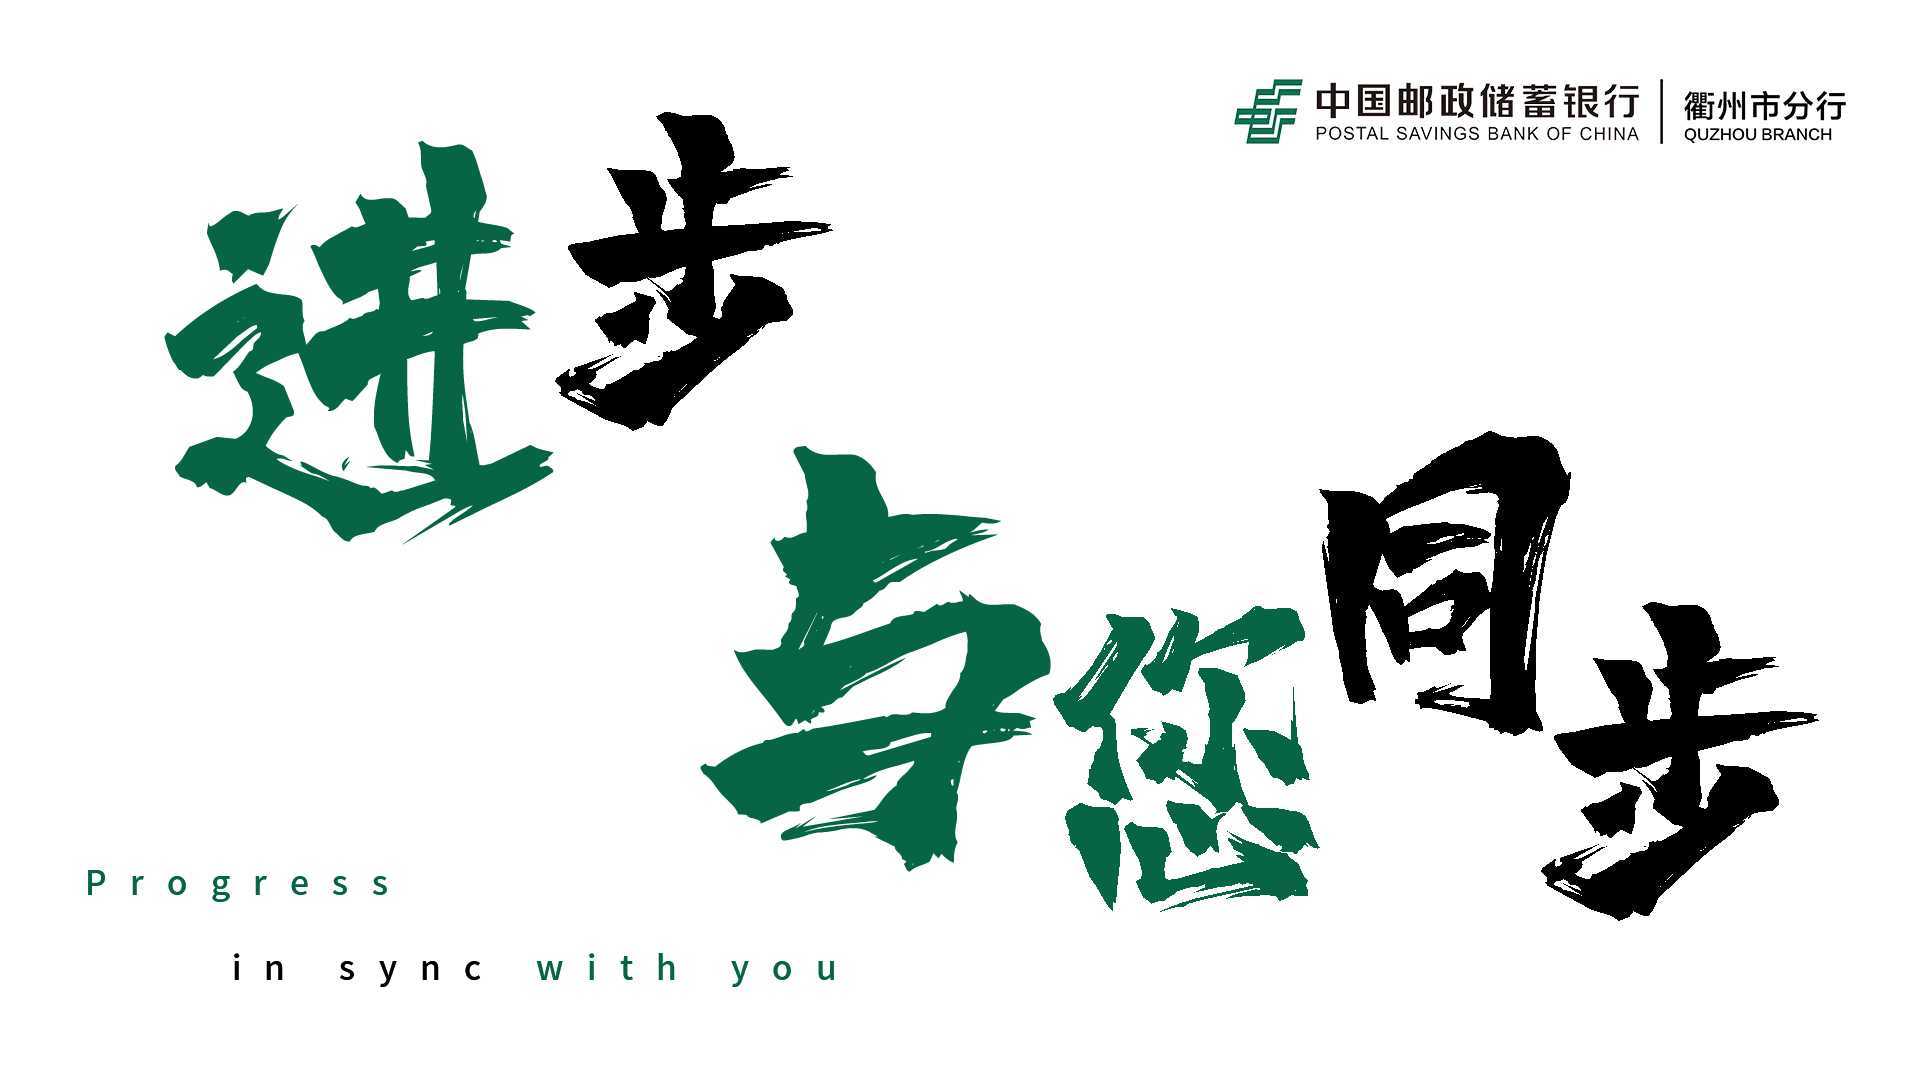 邮政储蓄银行|衢州市分行 15周年短片《进步 与您同步》